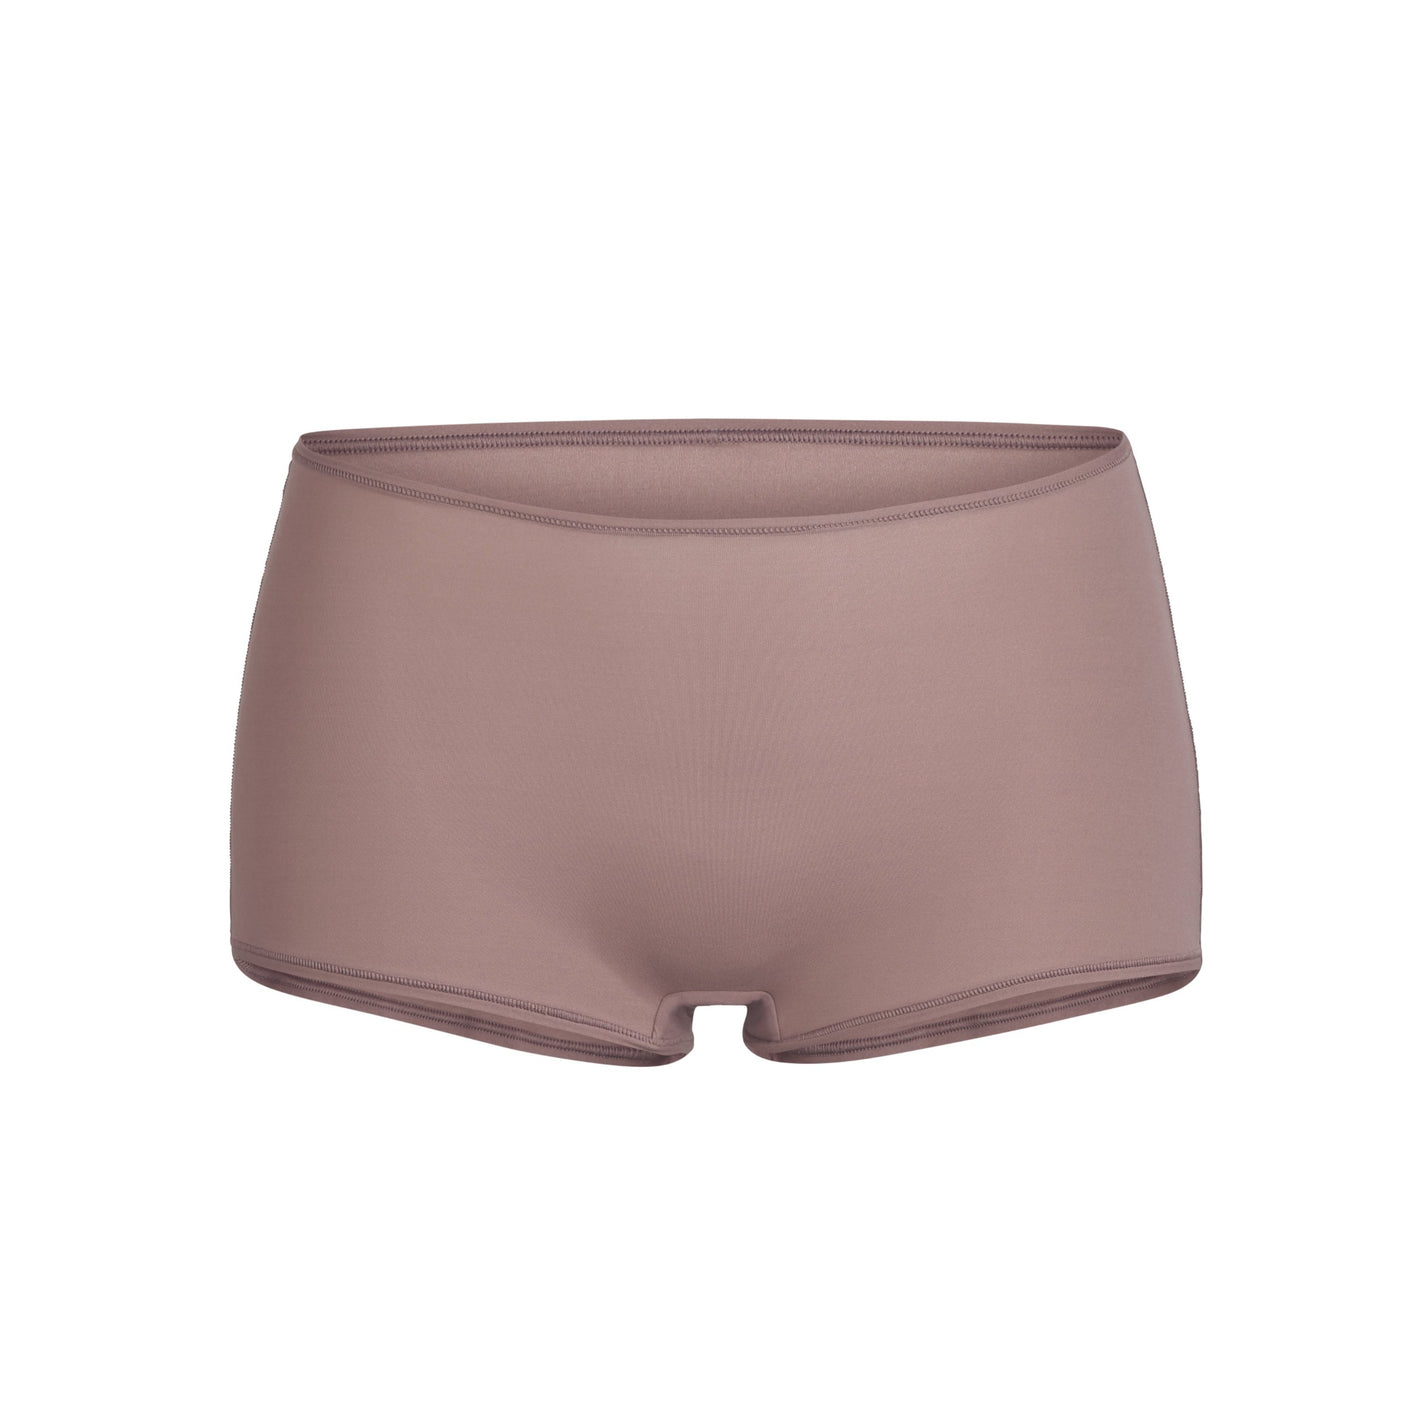 SKIMS Fits Everybody Boy Shorts - Umber - ShopStyle Panties